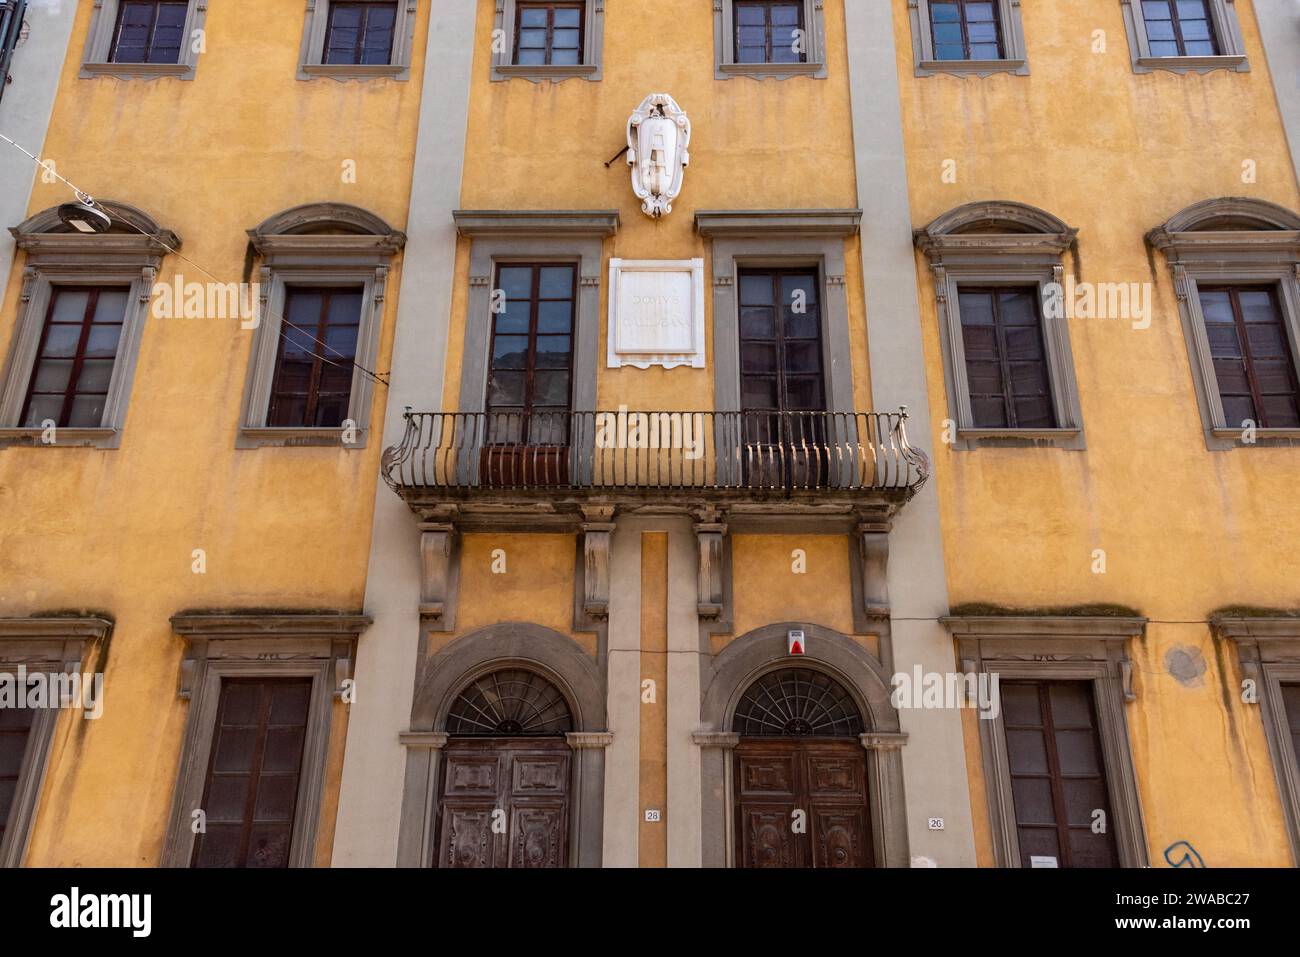 Façade de la maison à Pise, en Italie, où vivait Galileo Galilei Banque D'Images